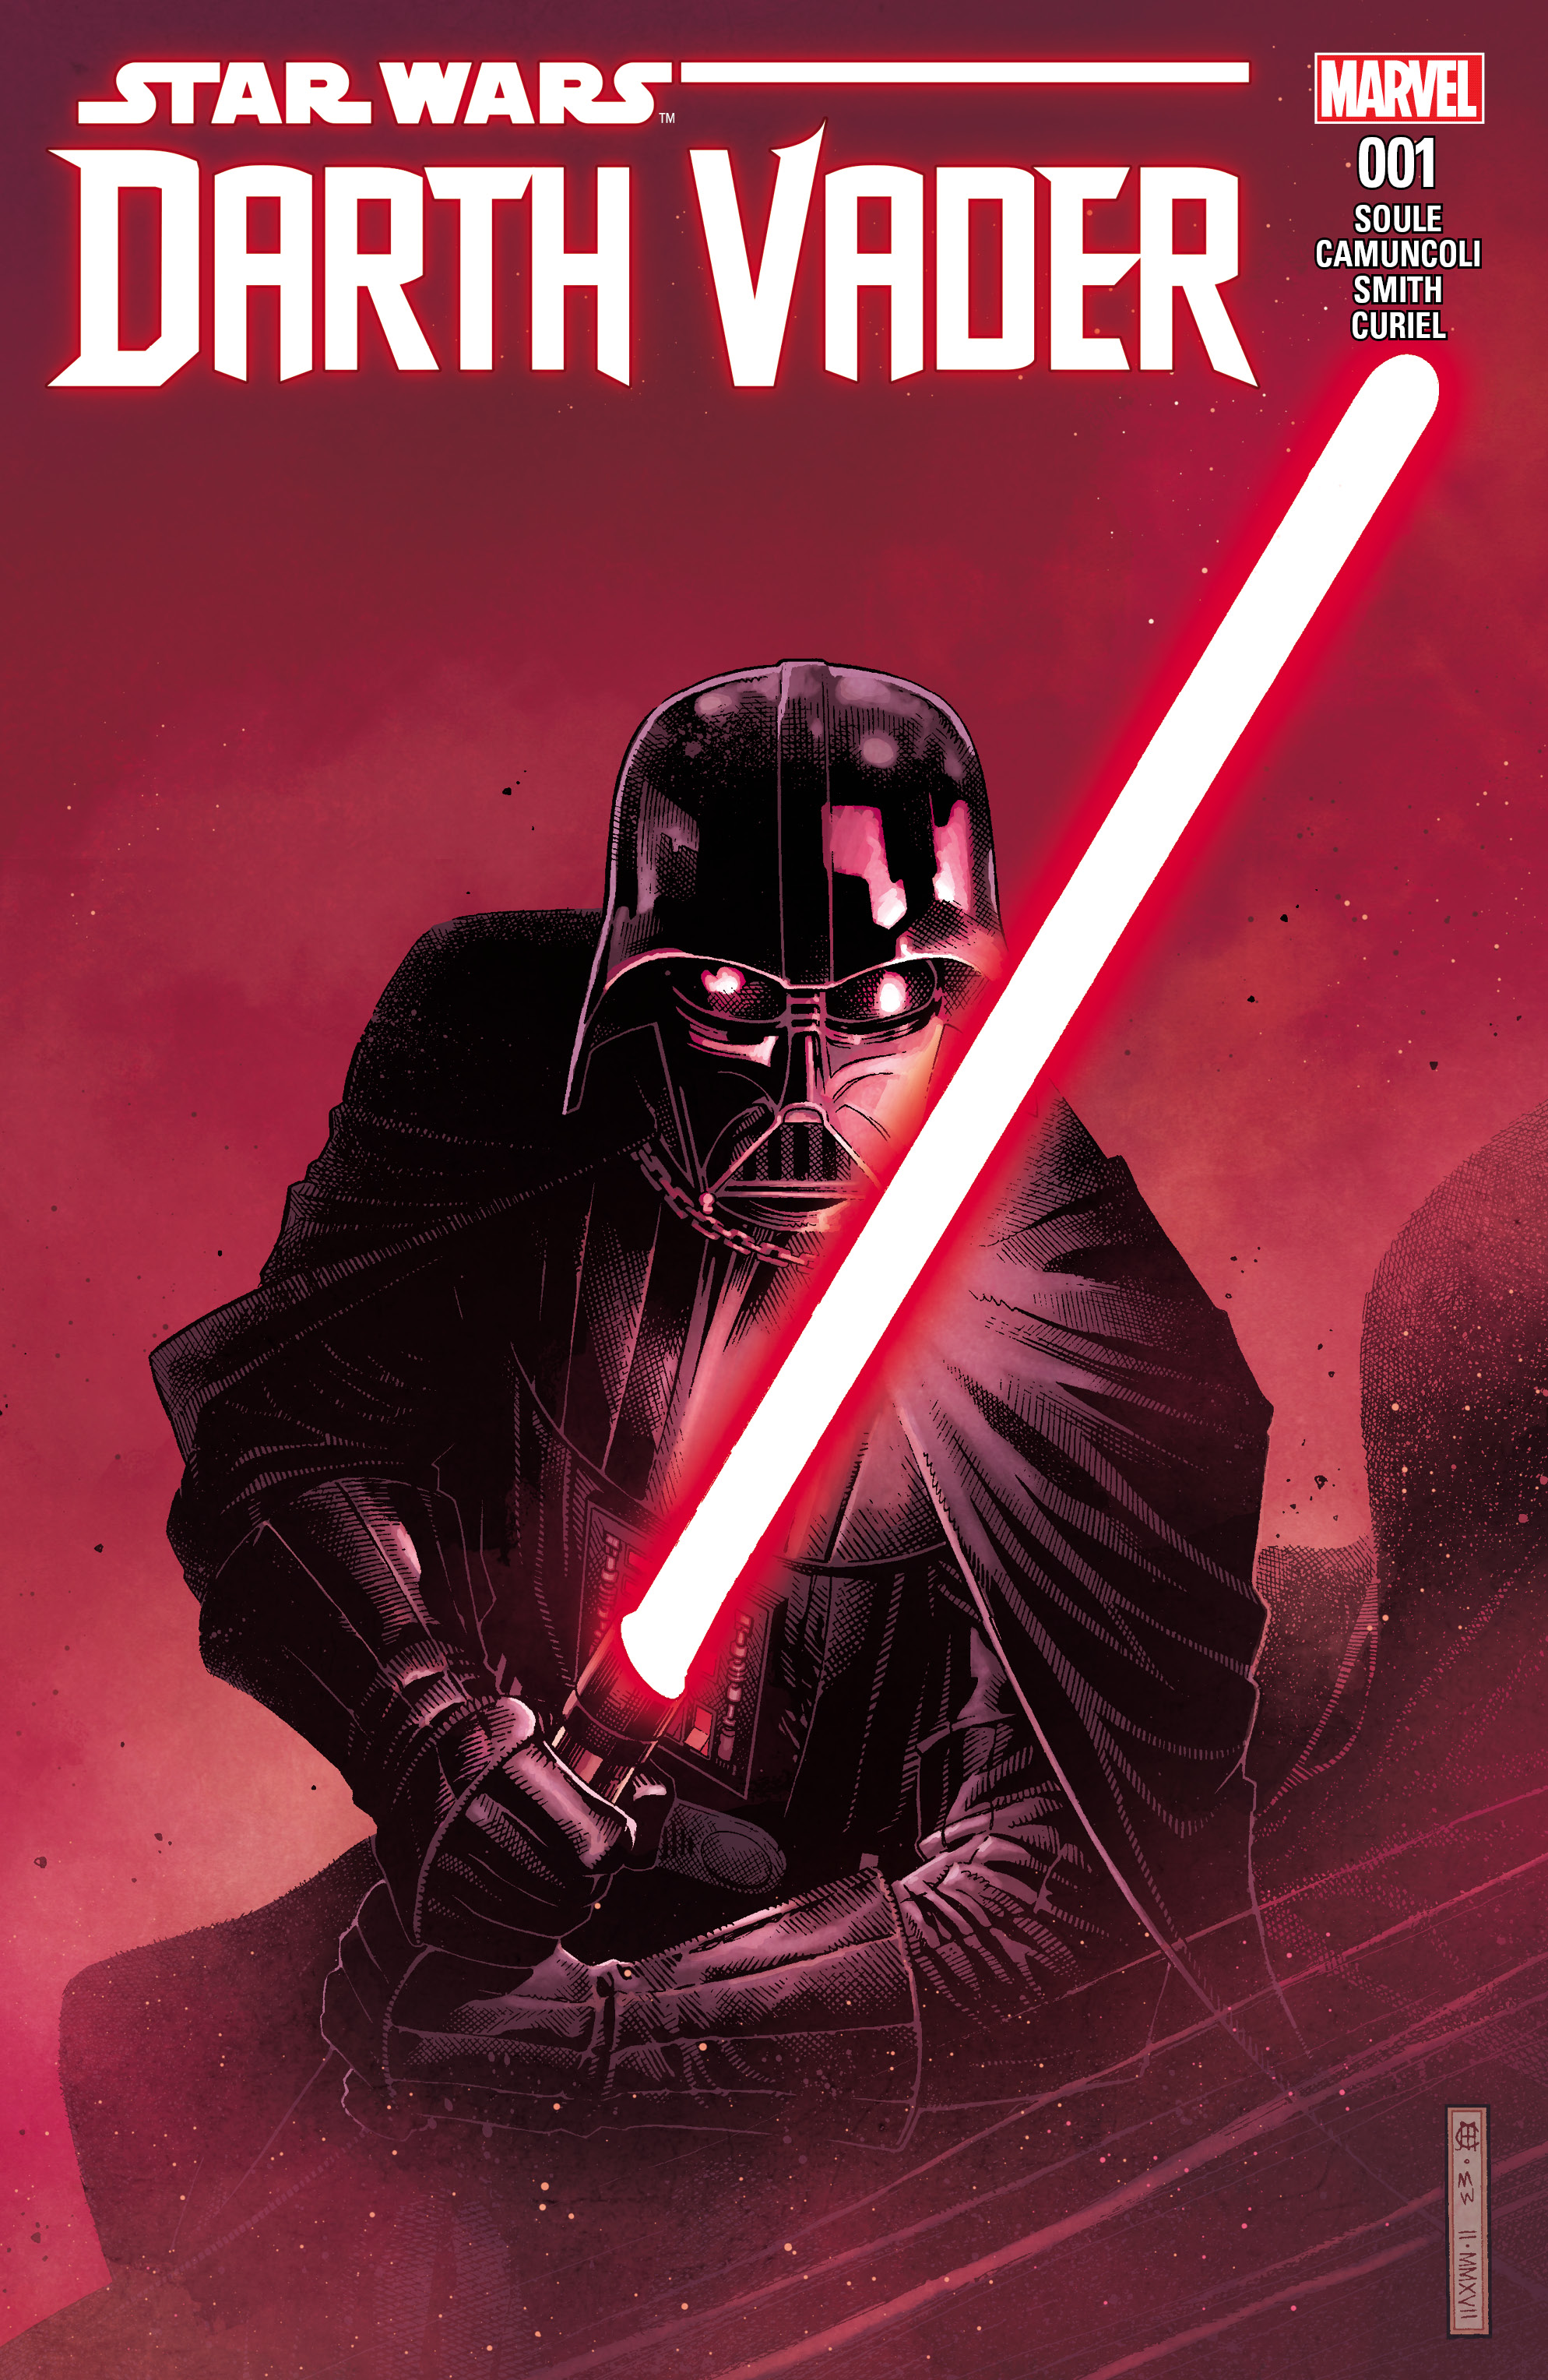 DarthVader001 Cvr Marvel Comics Announces Darth Vader #1